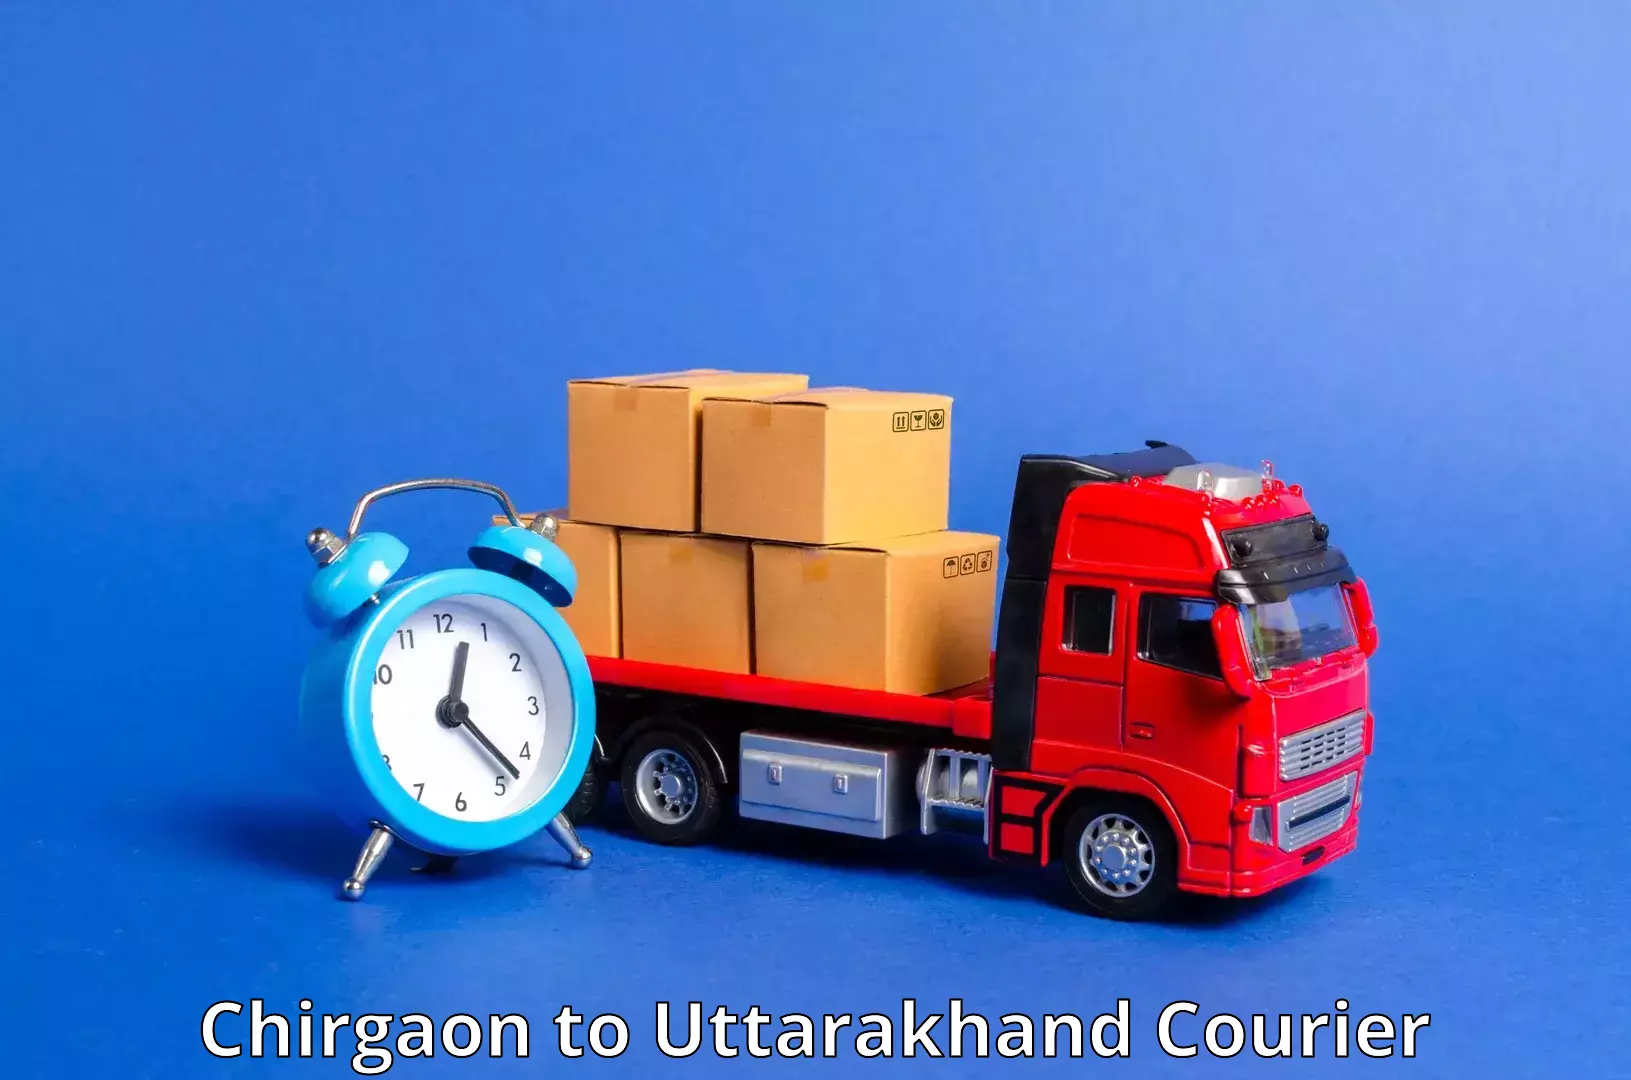 Fast shipping solutions Chirgaon to Kotdwara